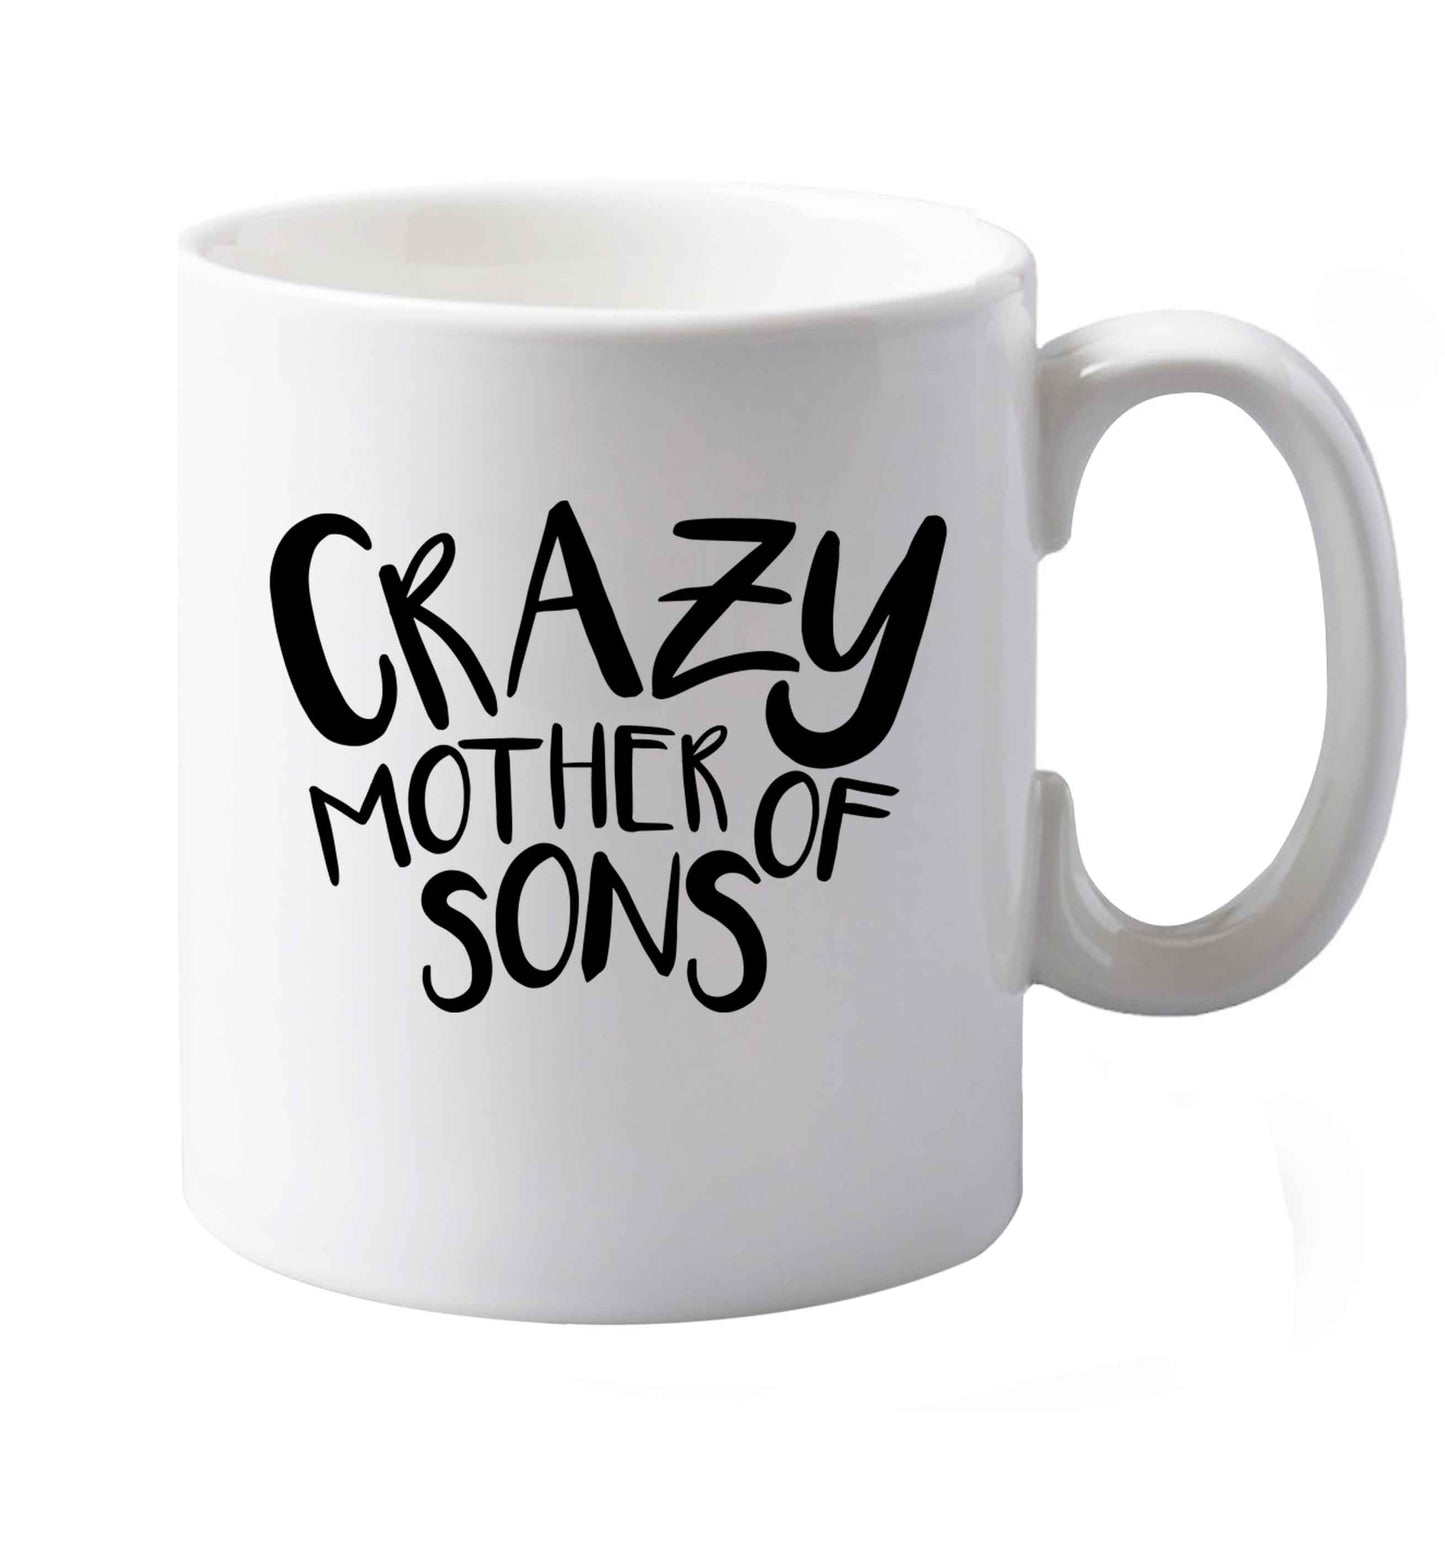 10 oz Crazy mother of sons ceramic mug both sides